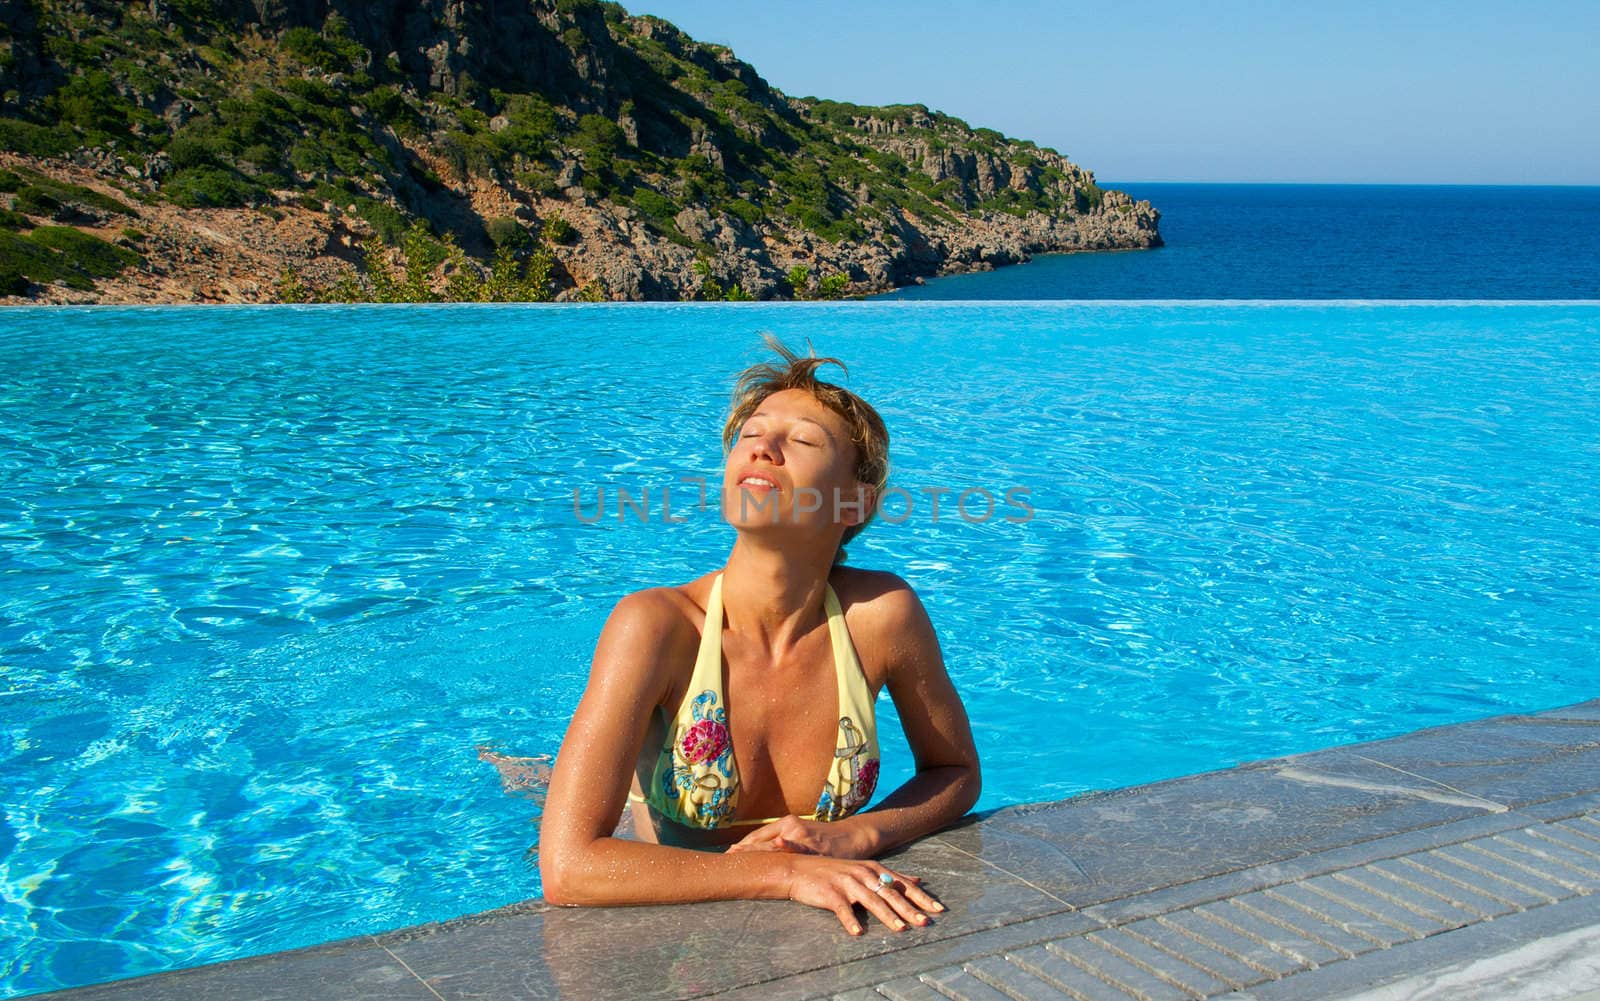 Beautiful woman suntanning in swimming pool near the Sea